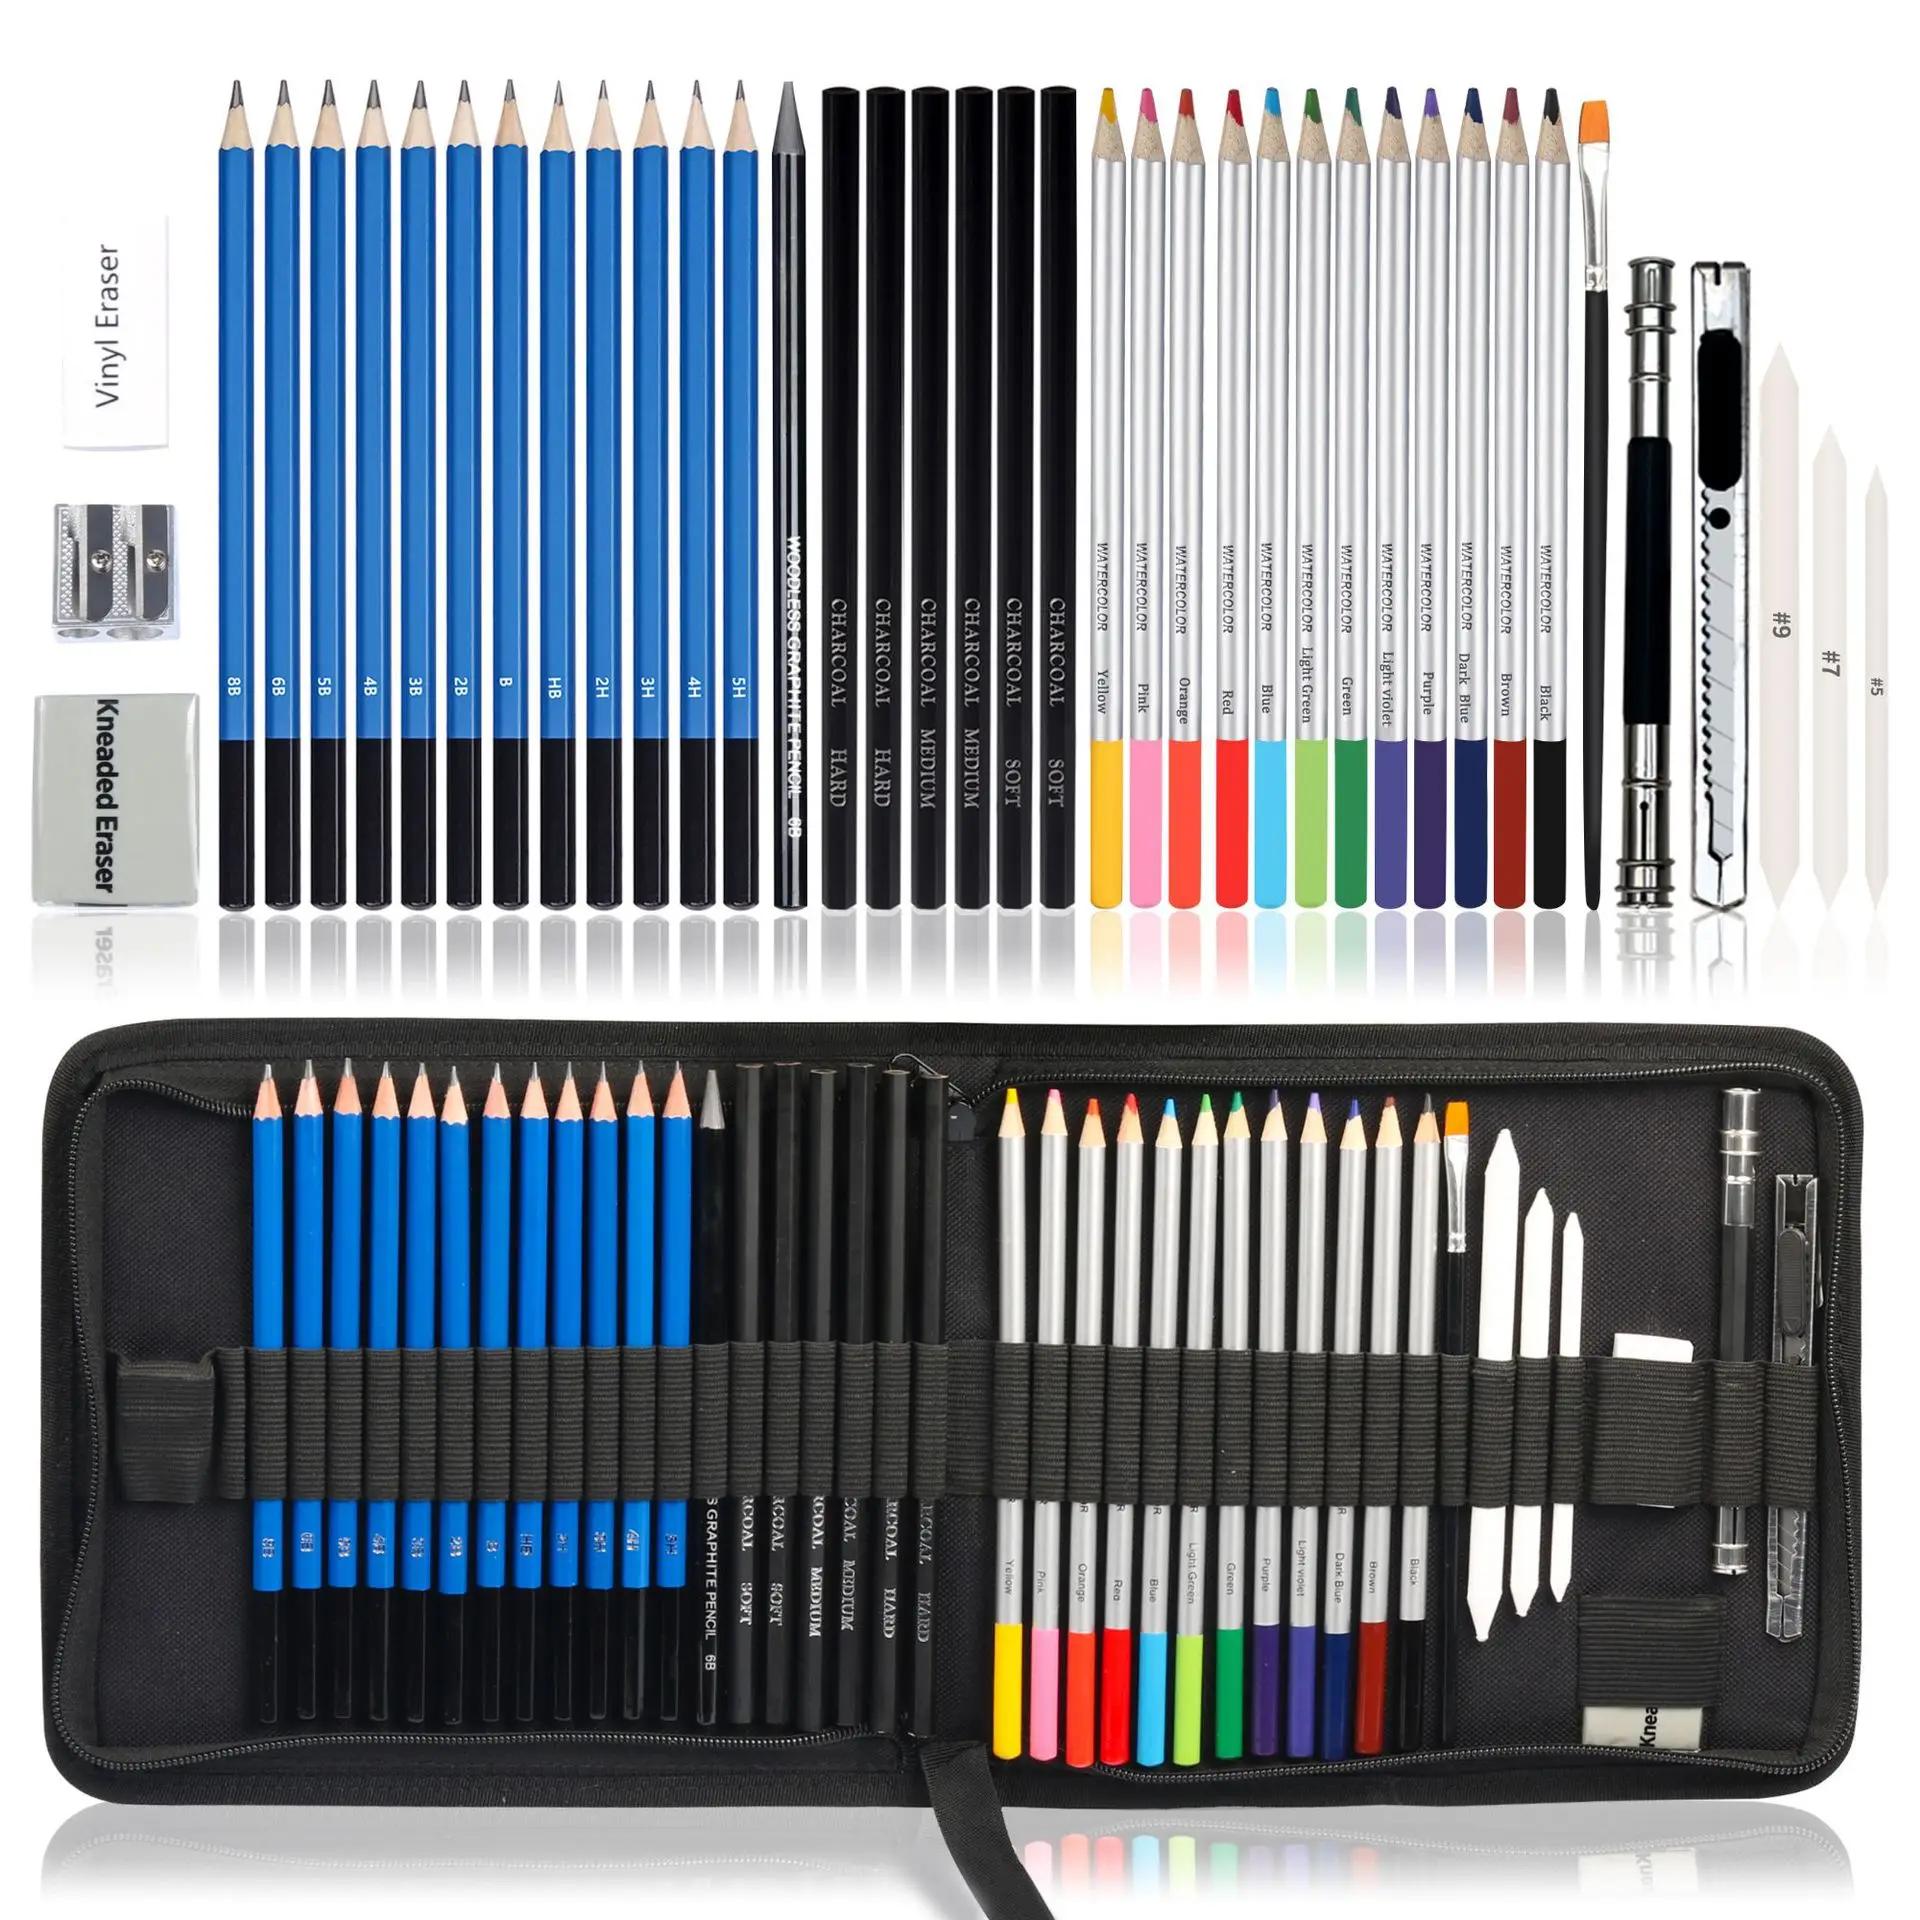 Professional 41pcs Artist Kit Includes Graphite Pencils Sticks Sharpener Eraser Sketch Pencils Set for Drawing